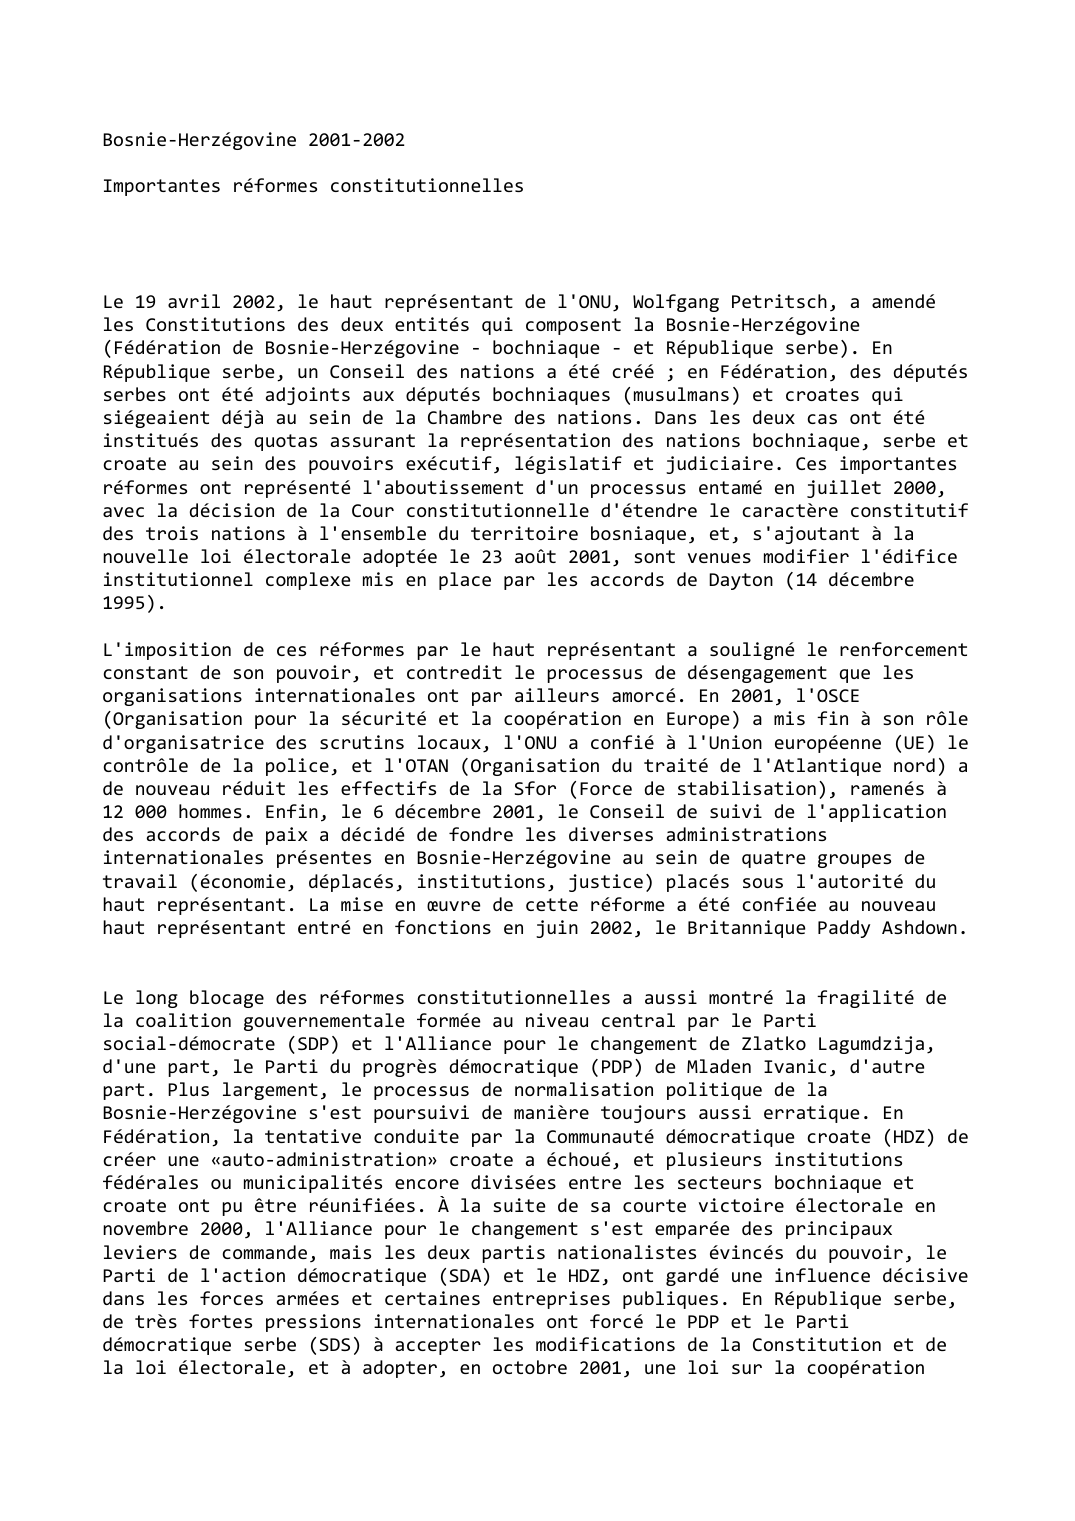 Prévisualisation du document Bosnie-Herzégovine (2001-2002) :Importantes réformes constitutionnelles